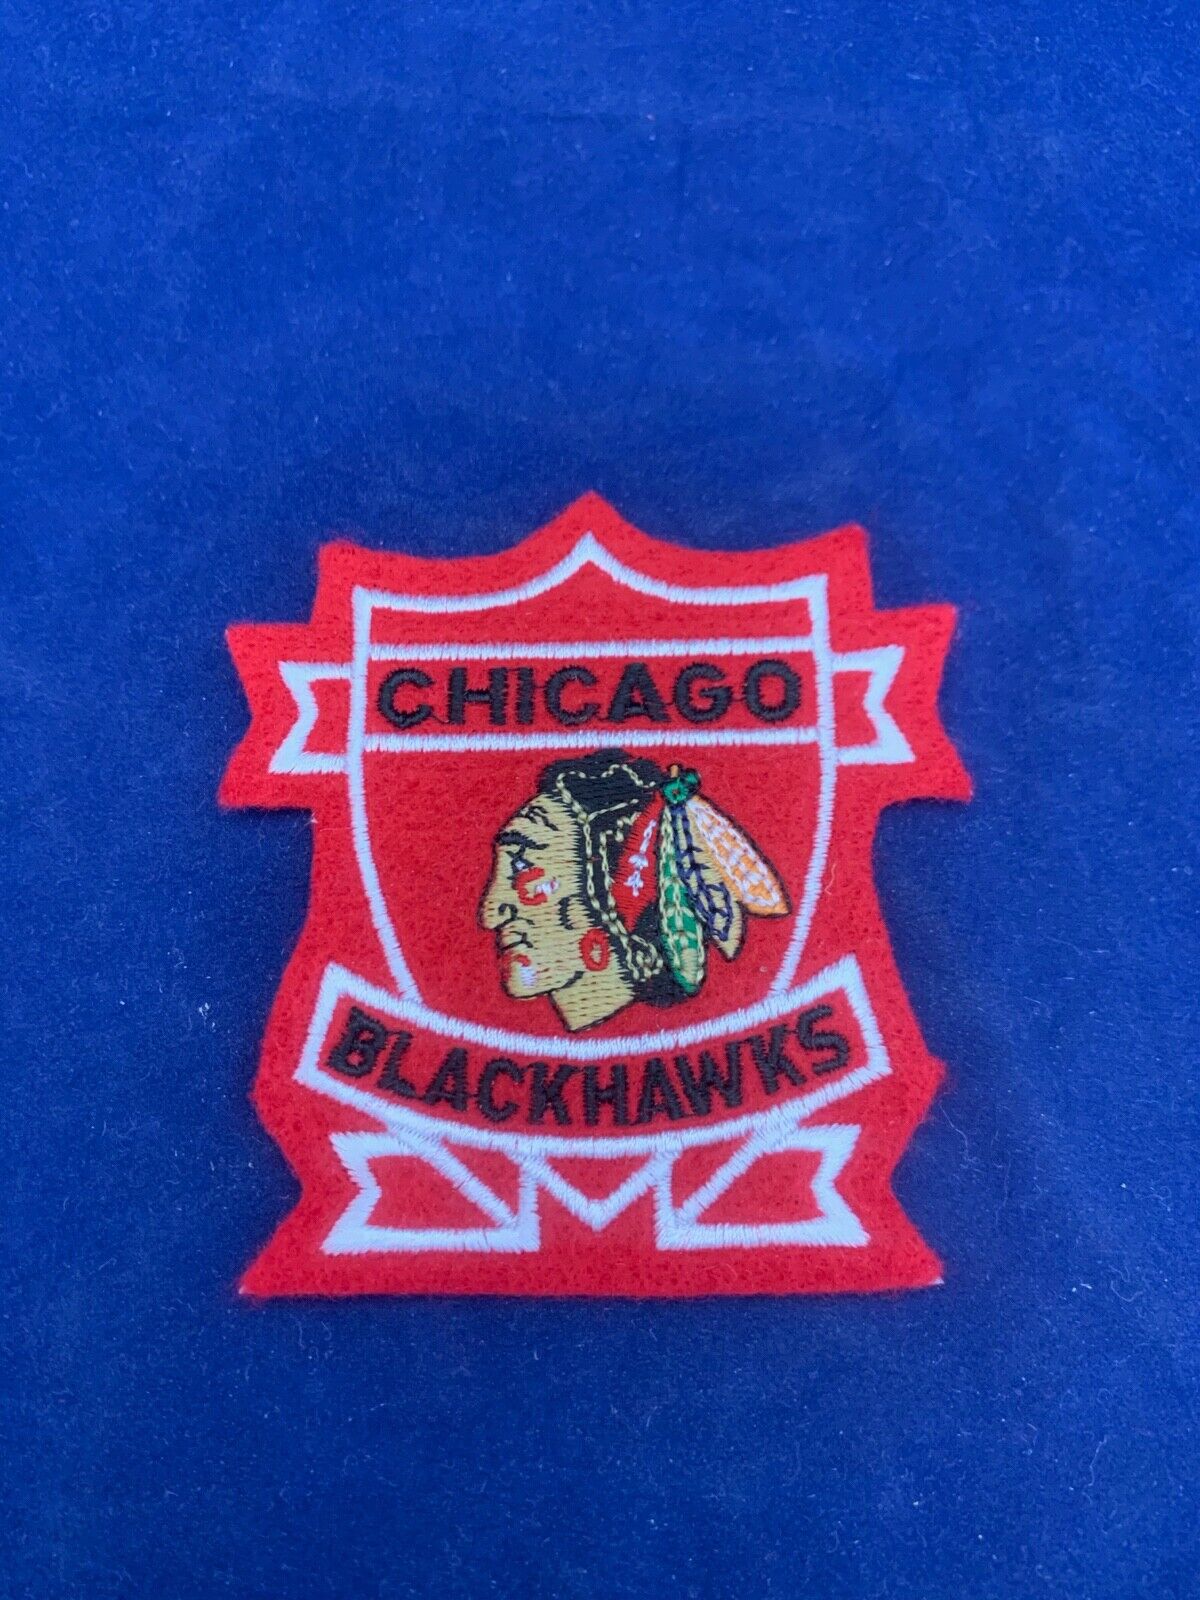 Chicago Blackhawks NHL Hockey Patch Size 3 x 3.5 inches